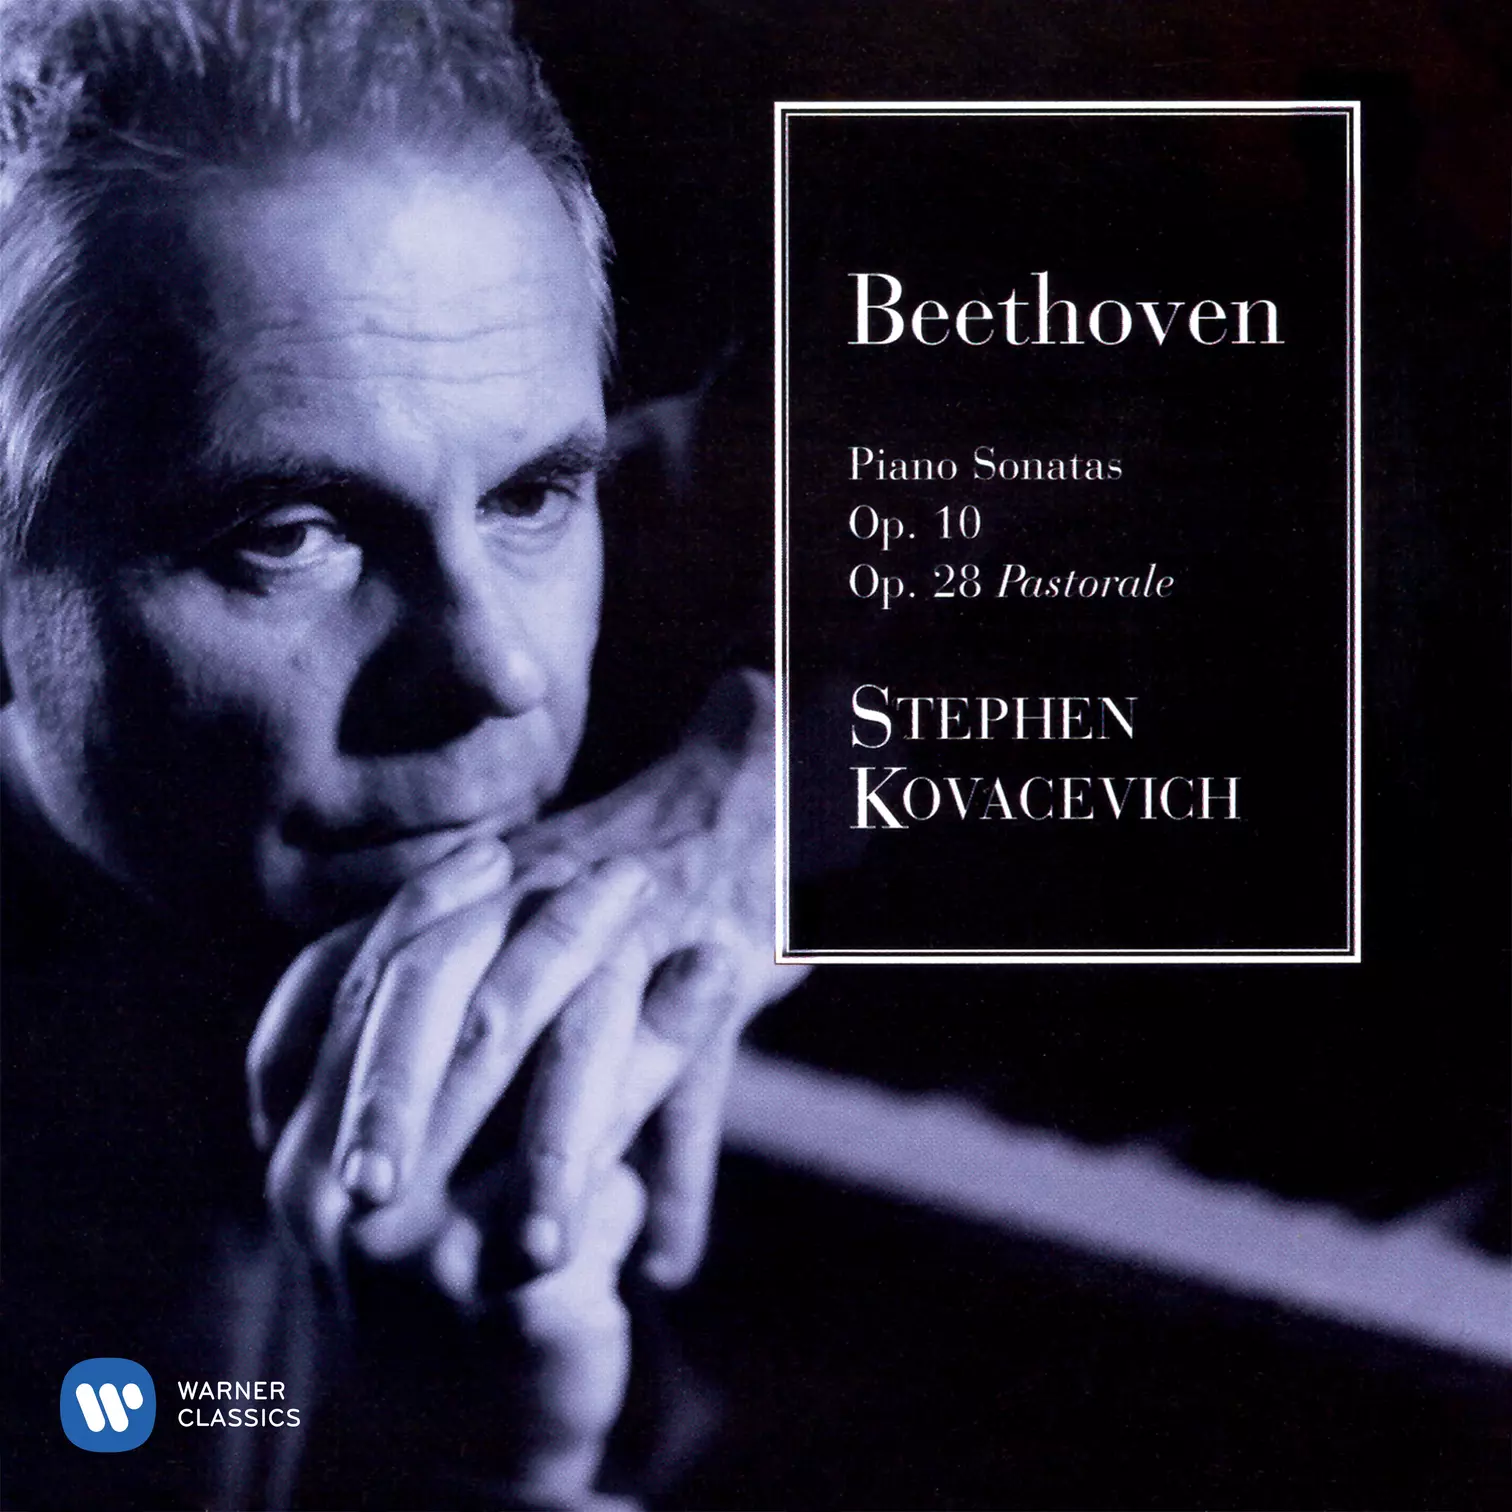 Beethoven: Piano Sonatas Nos. 5, 6, 7 & 15 “Pastoral”